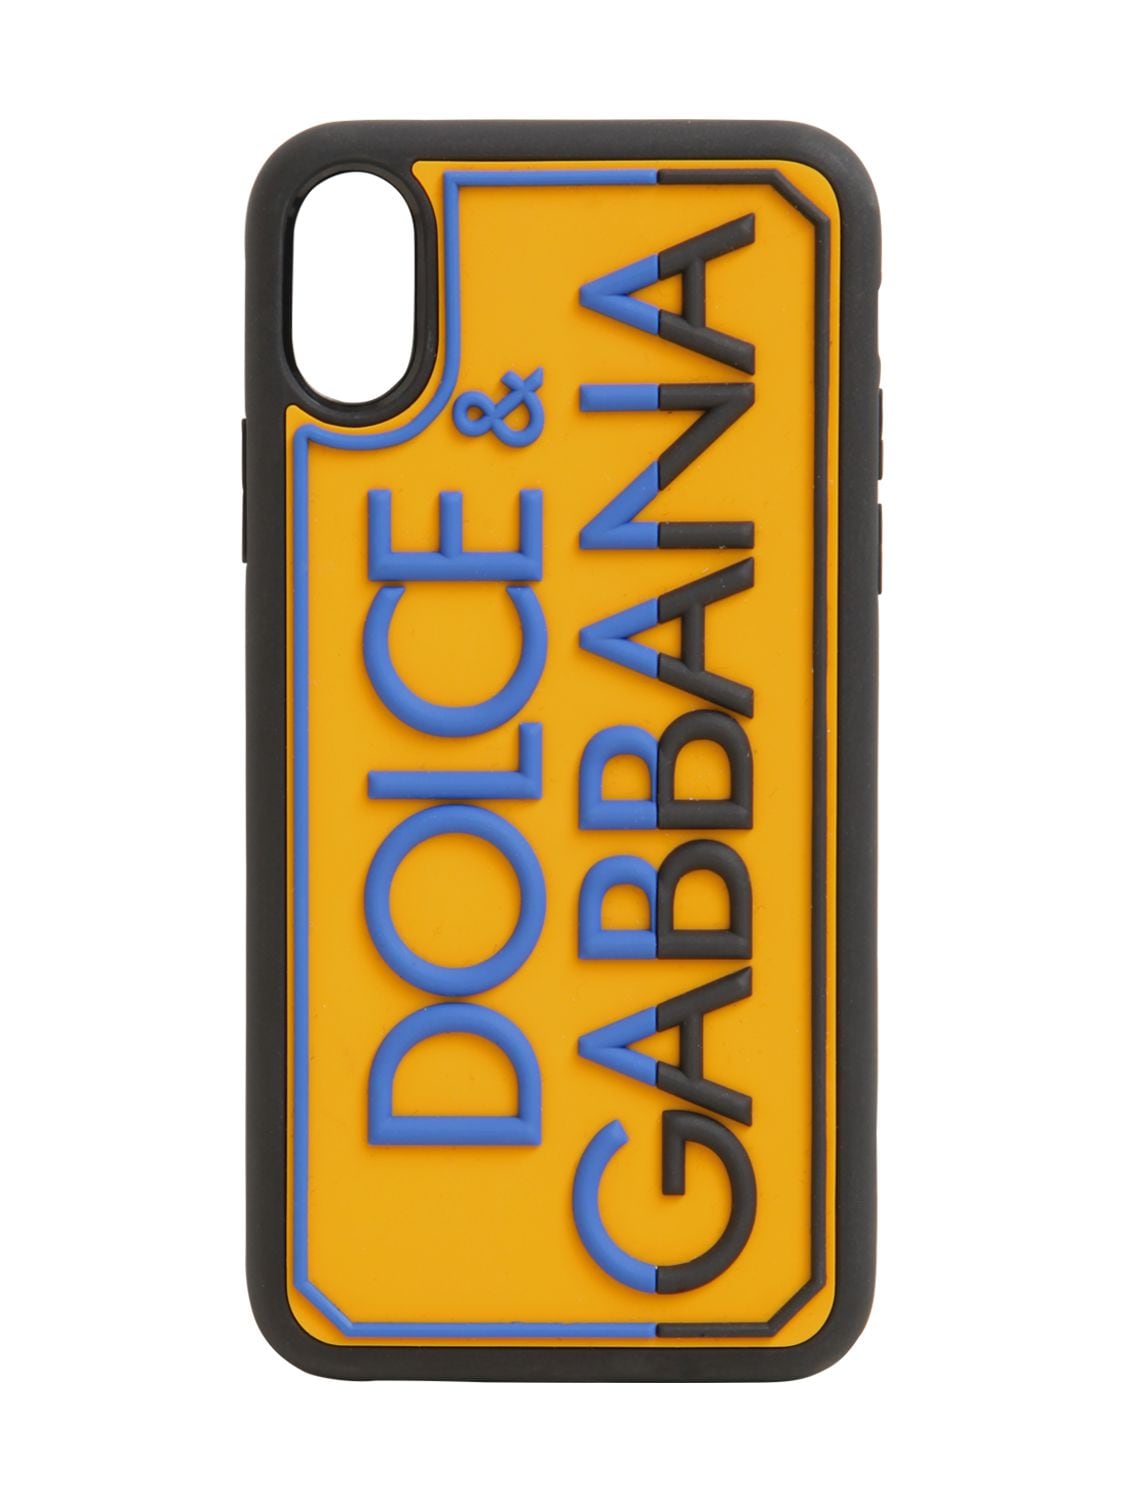 Dolce & Gabbana Logo压花橡胶iphone X/xs手机壳 In Sole,blu